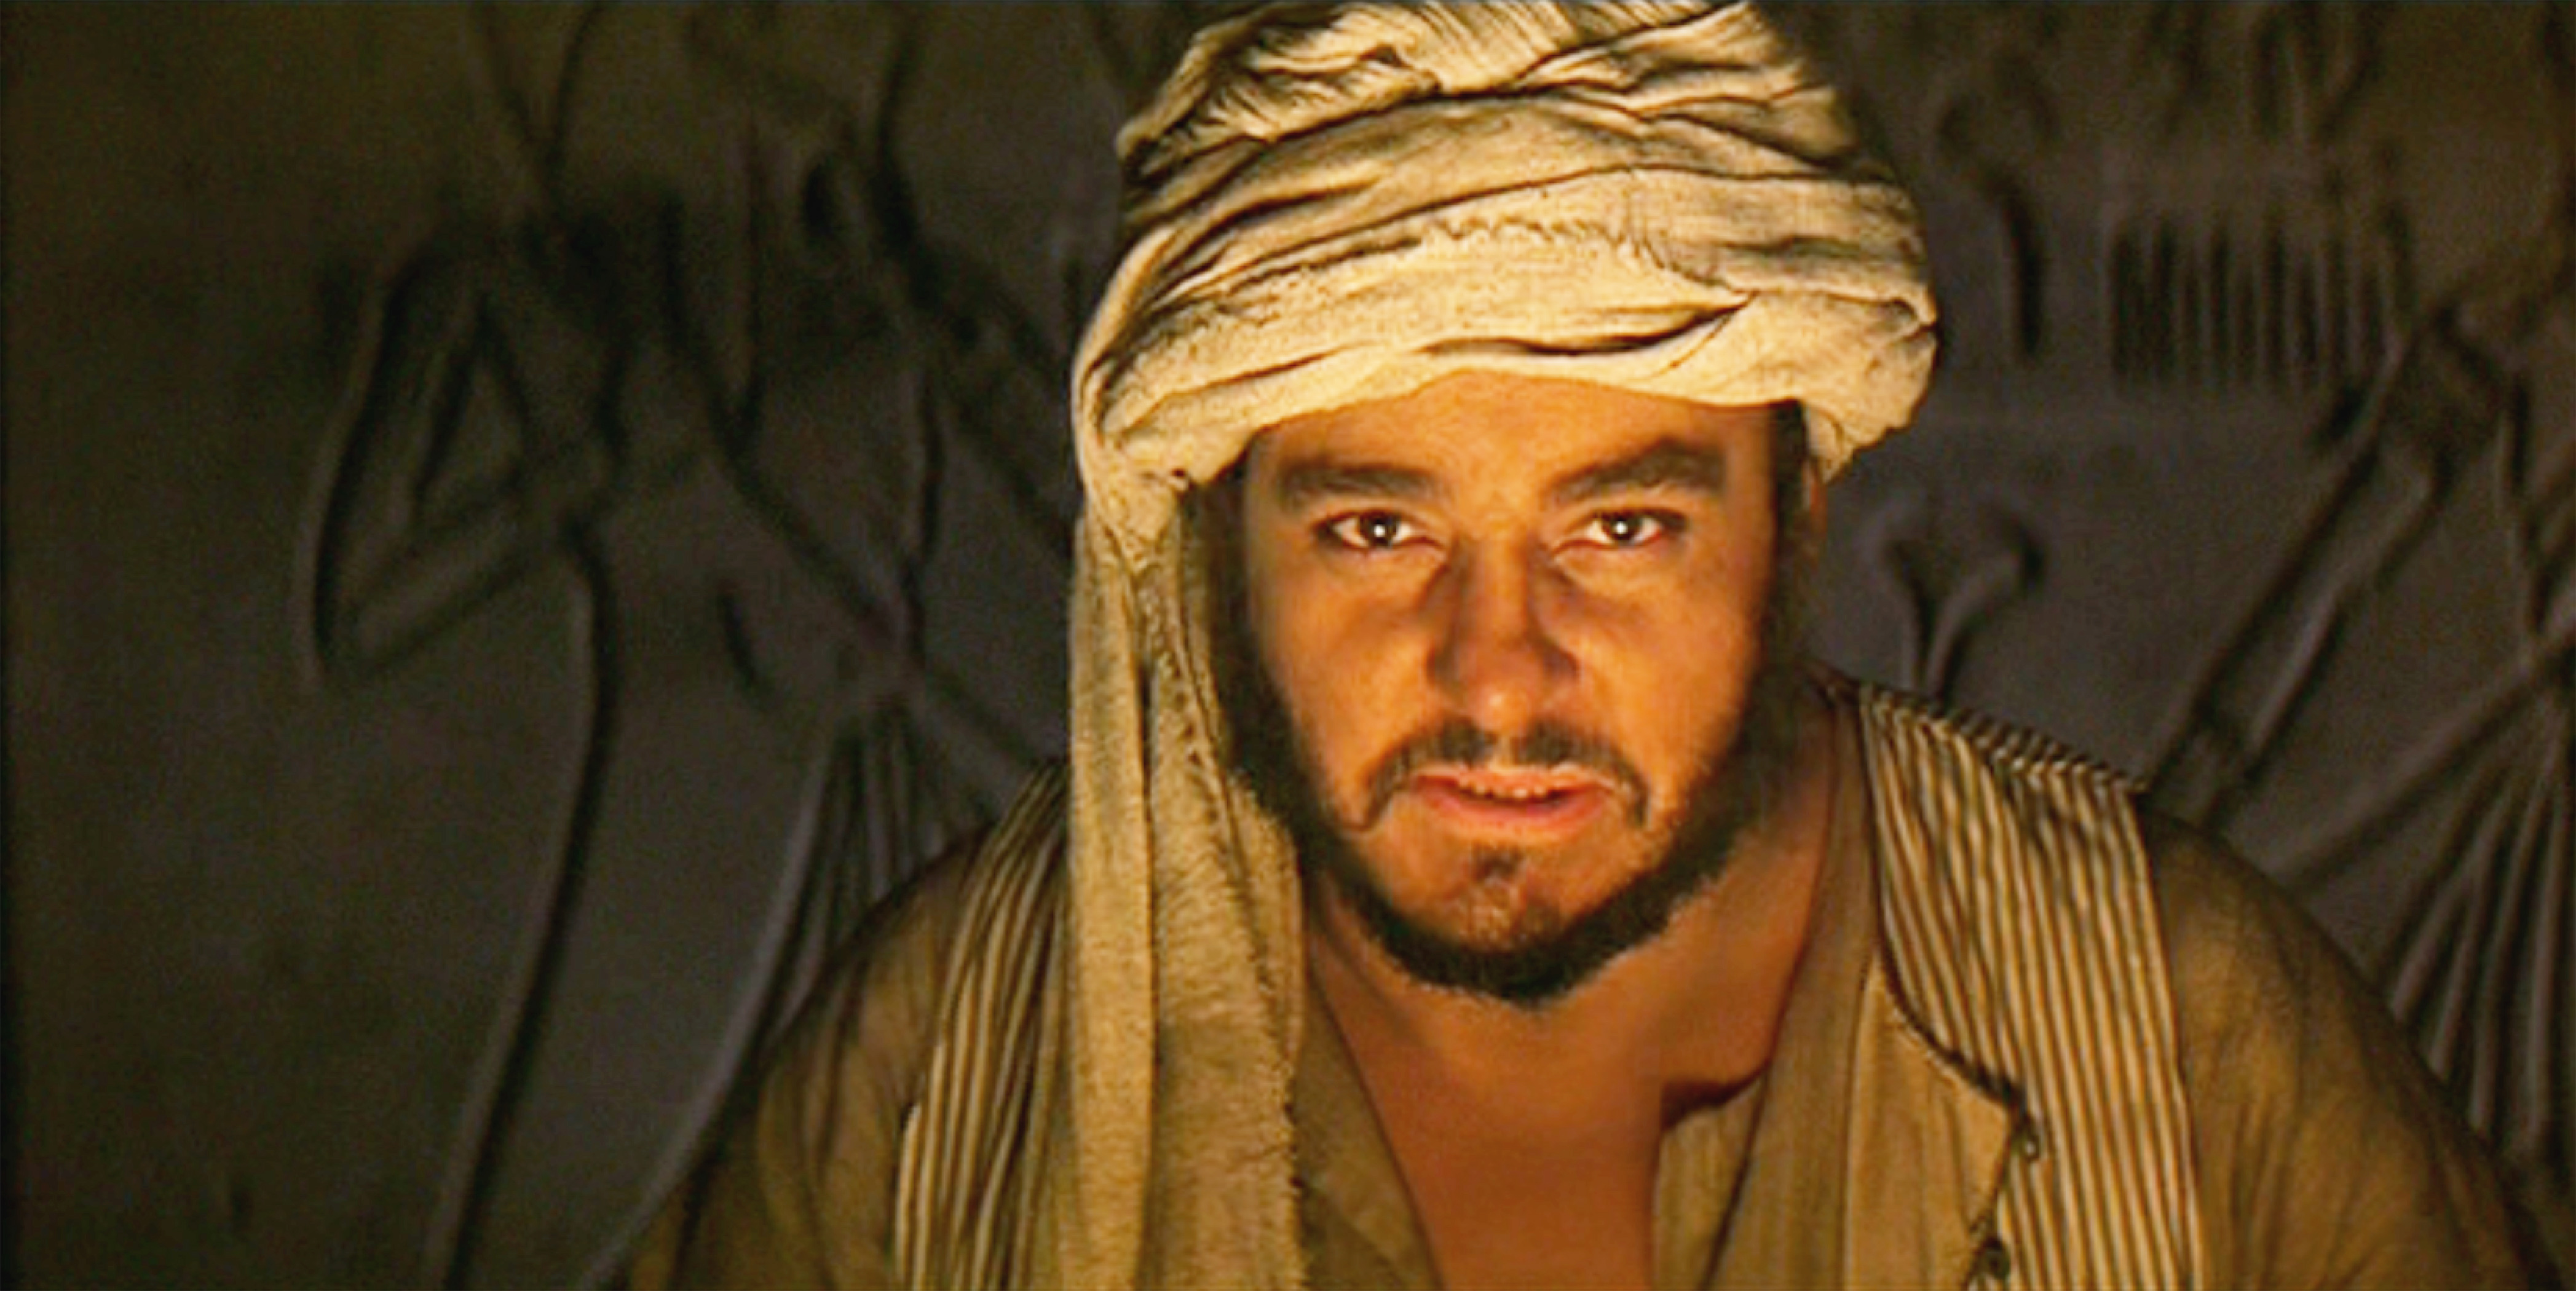 John Rhys-Davies dans le rôle de Sallah dans "Indiana Jones et les aventuriers de l'arche perdue", sorti le 12 juin 1981. | Source : Getty Images